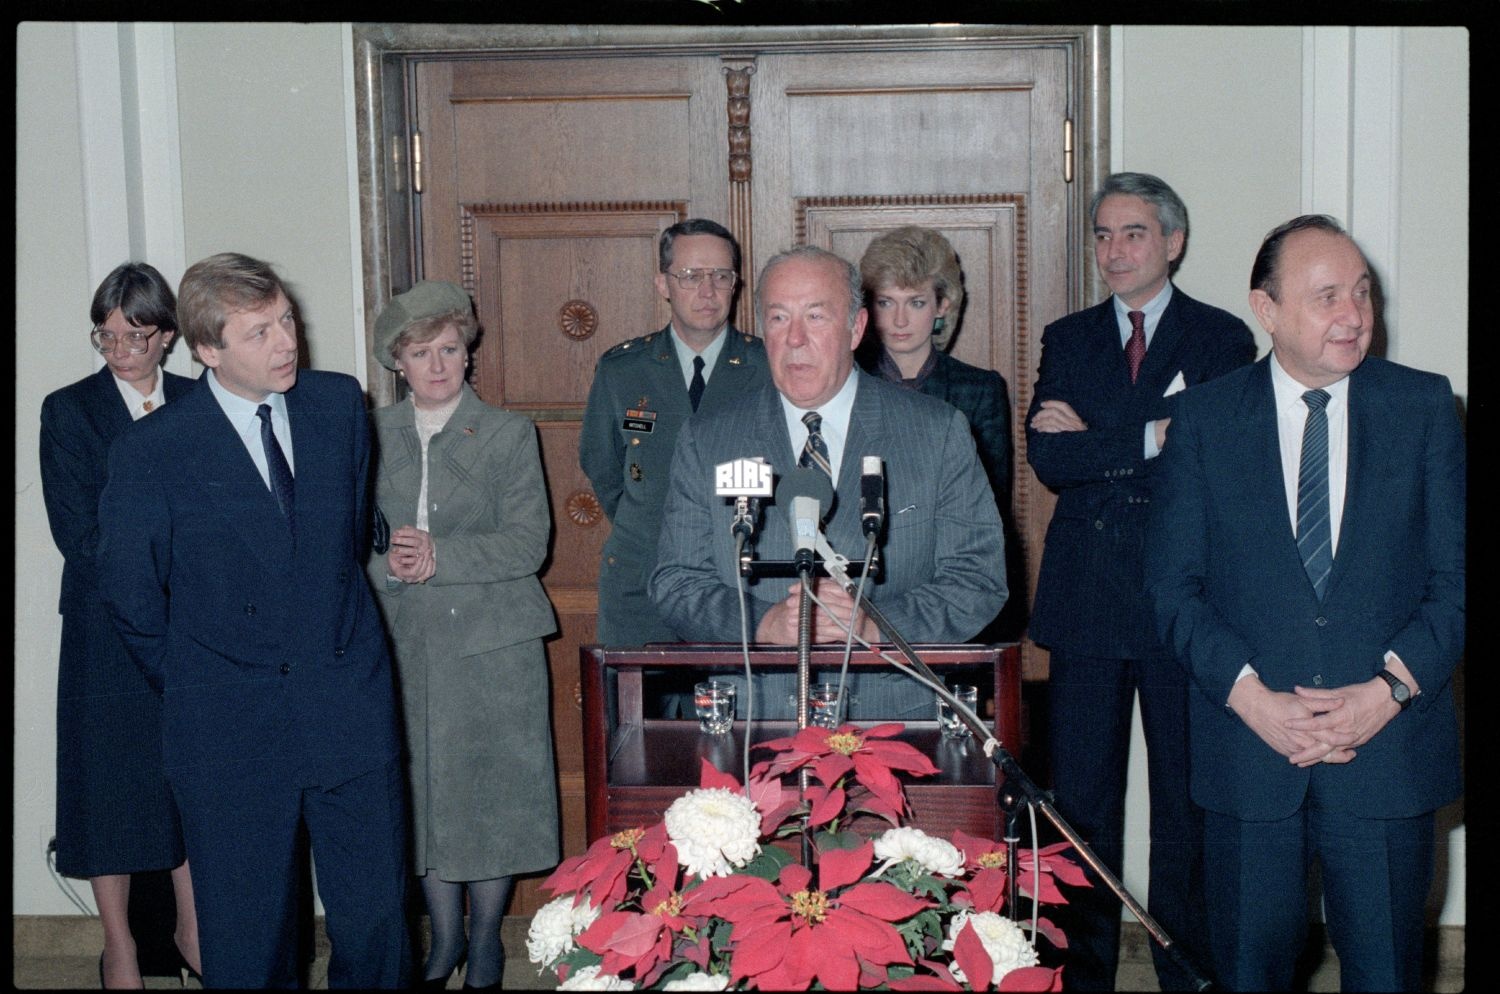 Fotografie: Besuch von US-Außenminister George P. Shultz in West-Berlin (AlliiertenMuseum/U.S. Army Photograph Public Domain Mark)